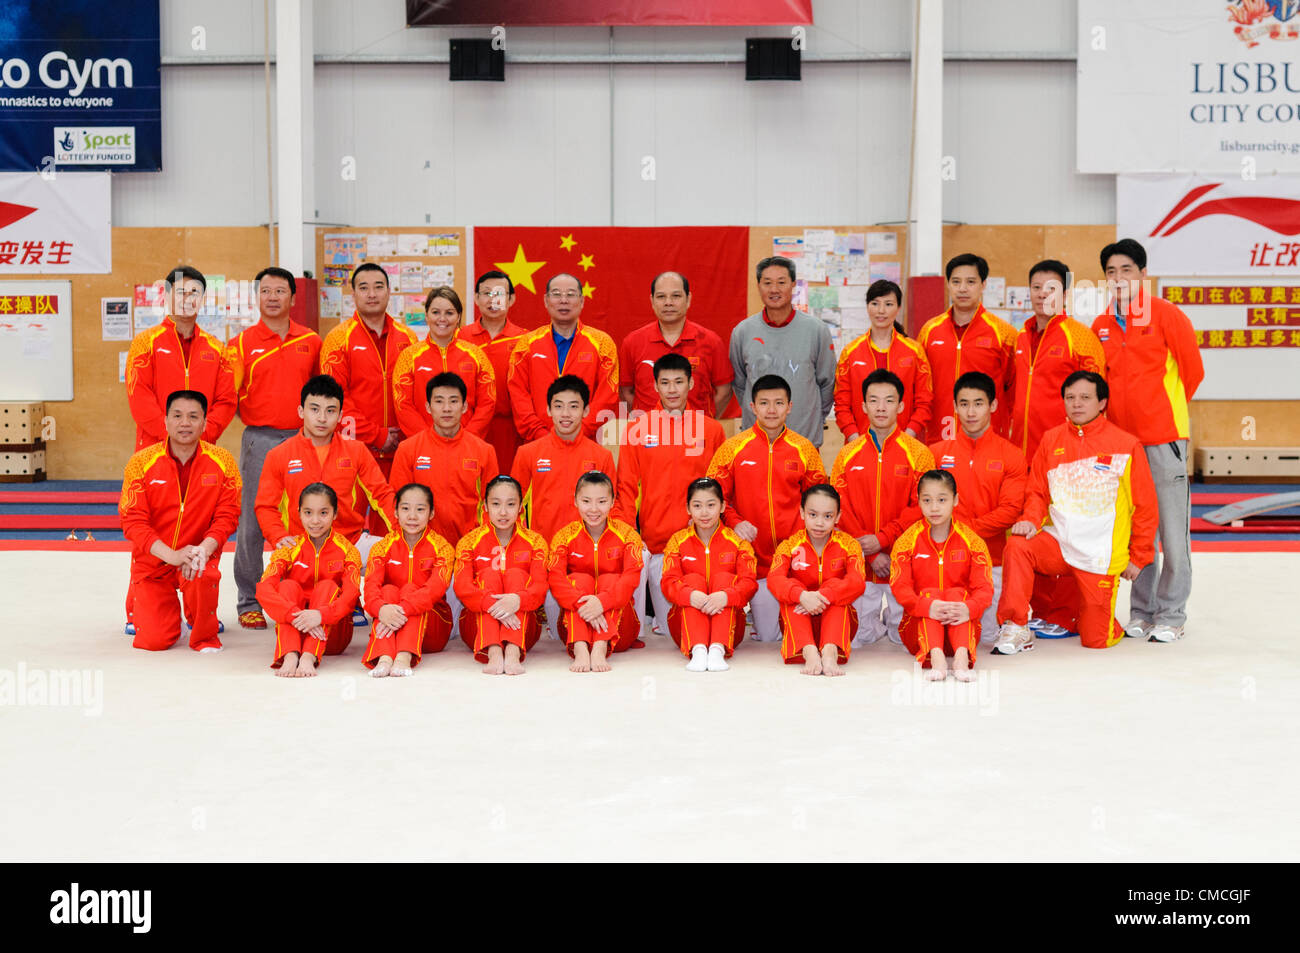 Lisburn, 18.07.2012 - chinesische Gymnastik Team und Trainer für London 2012 Olympische Spiele in Lisburn, Nordirland Stockfoto